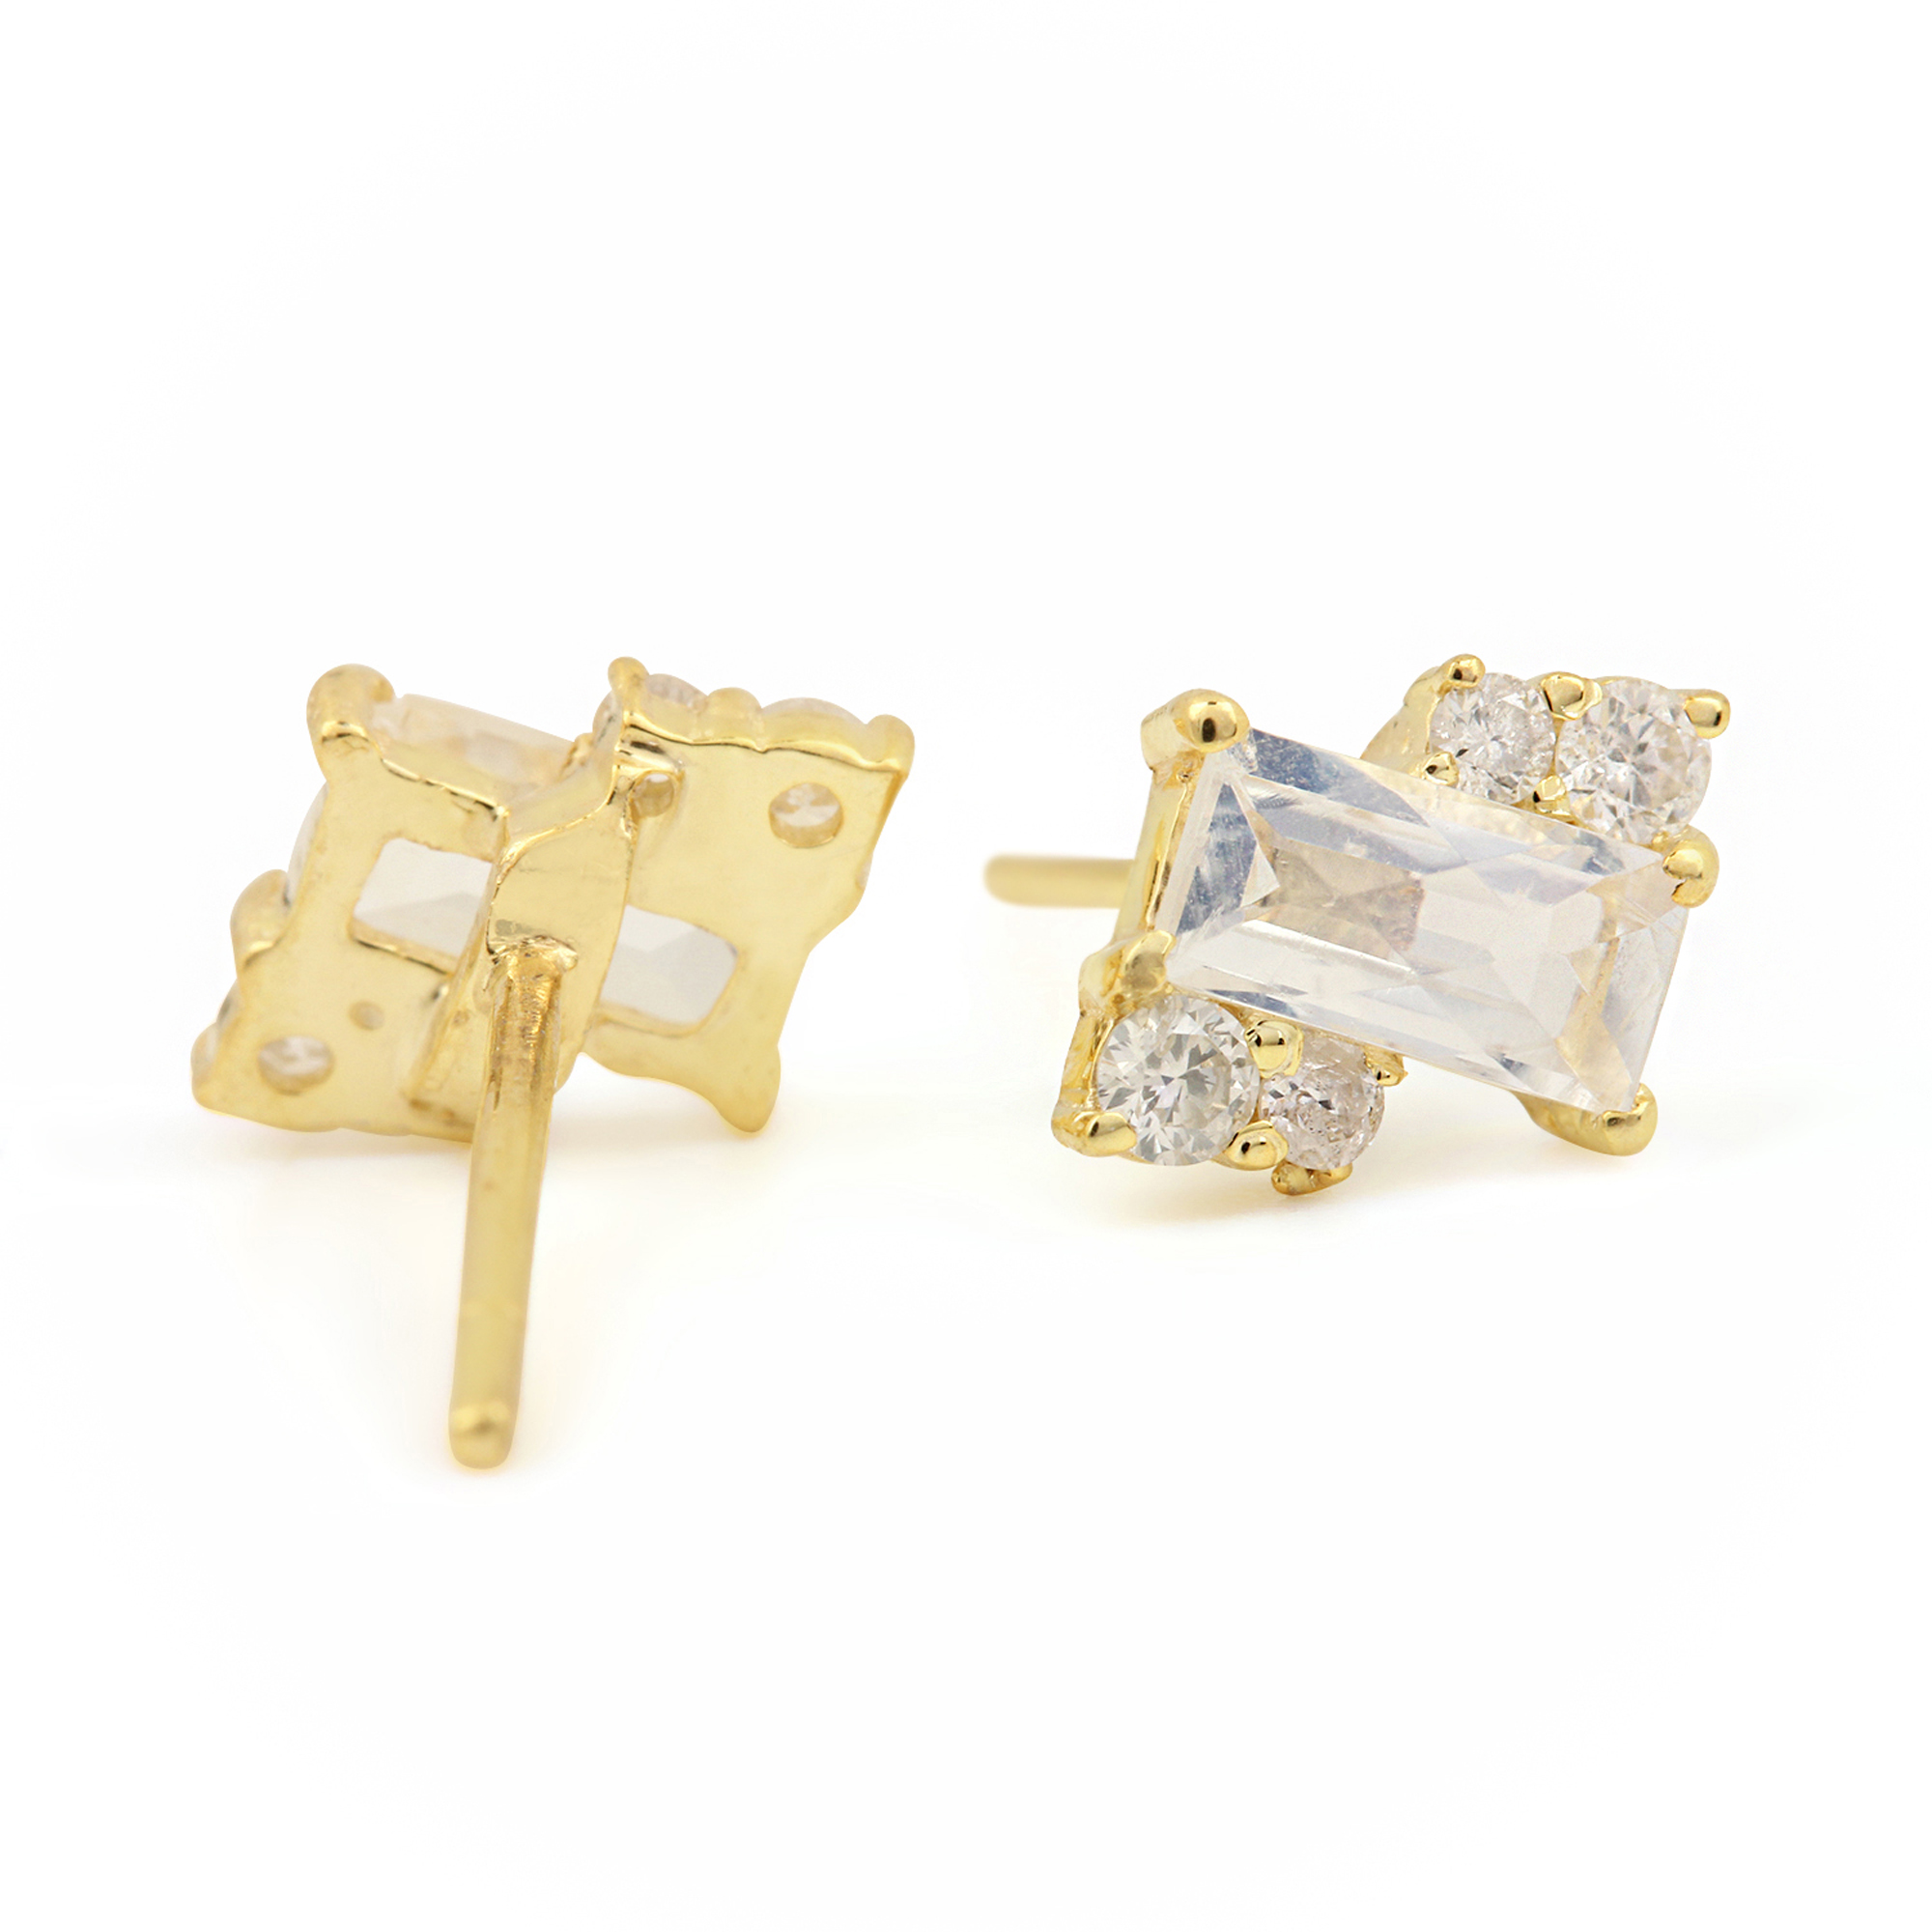 14k Solid Gold Minimalist Stud Earrings Adorned With Diamond & Moonstone